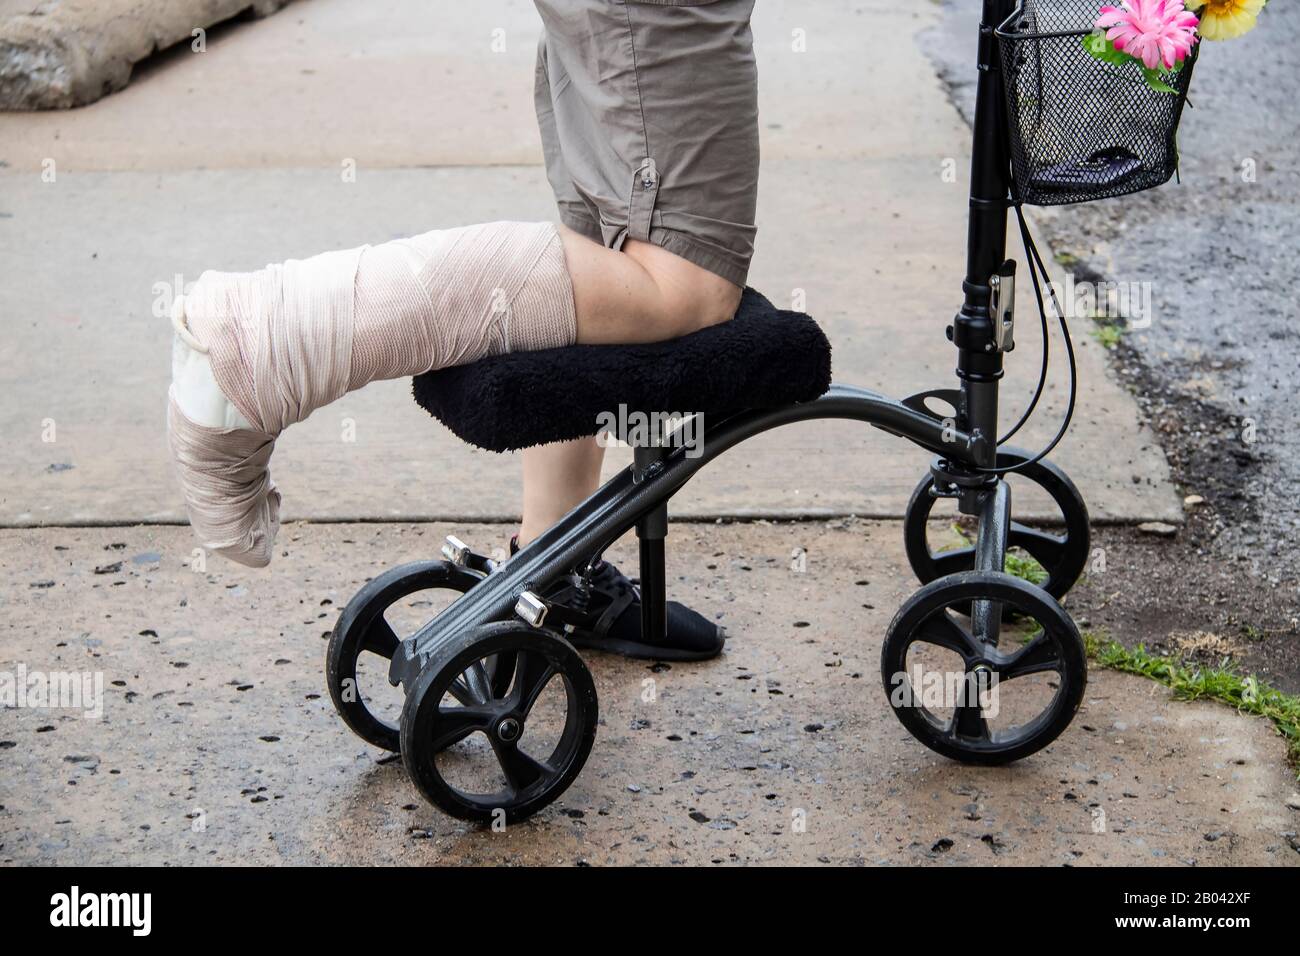 Frau mit gewickeltem Bein auf lenkbarem Kniehauser Roller mit Blumen auf Korb und Handy innen auf rauer zerbrochener Zementoberfläche - beschnitten Stockfoto